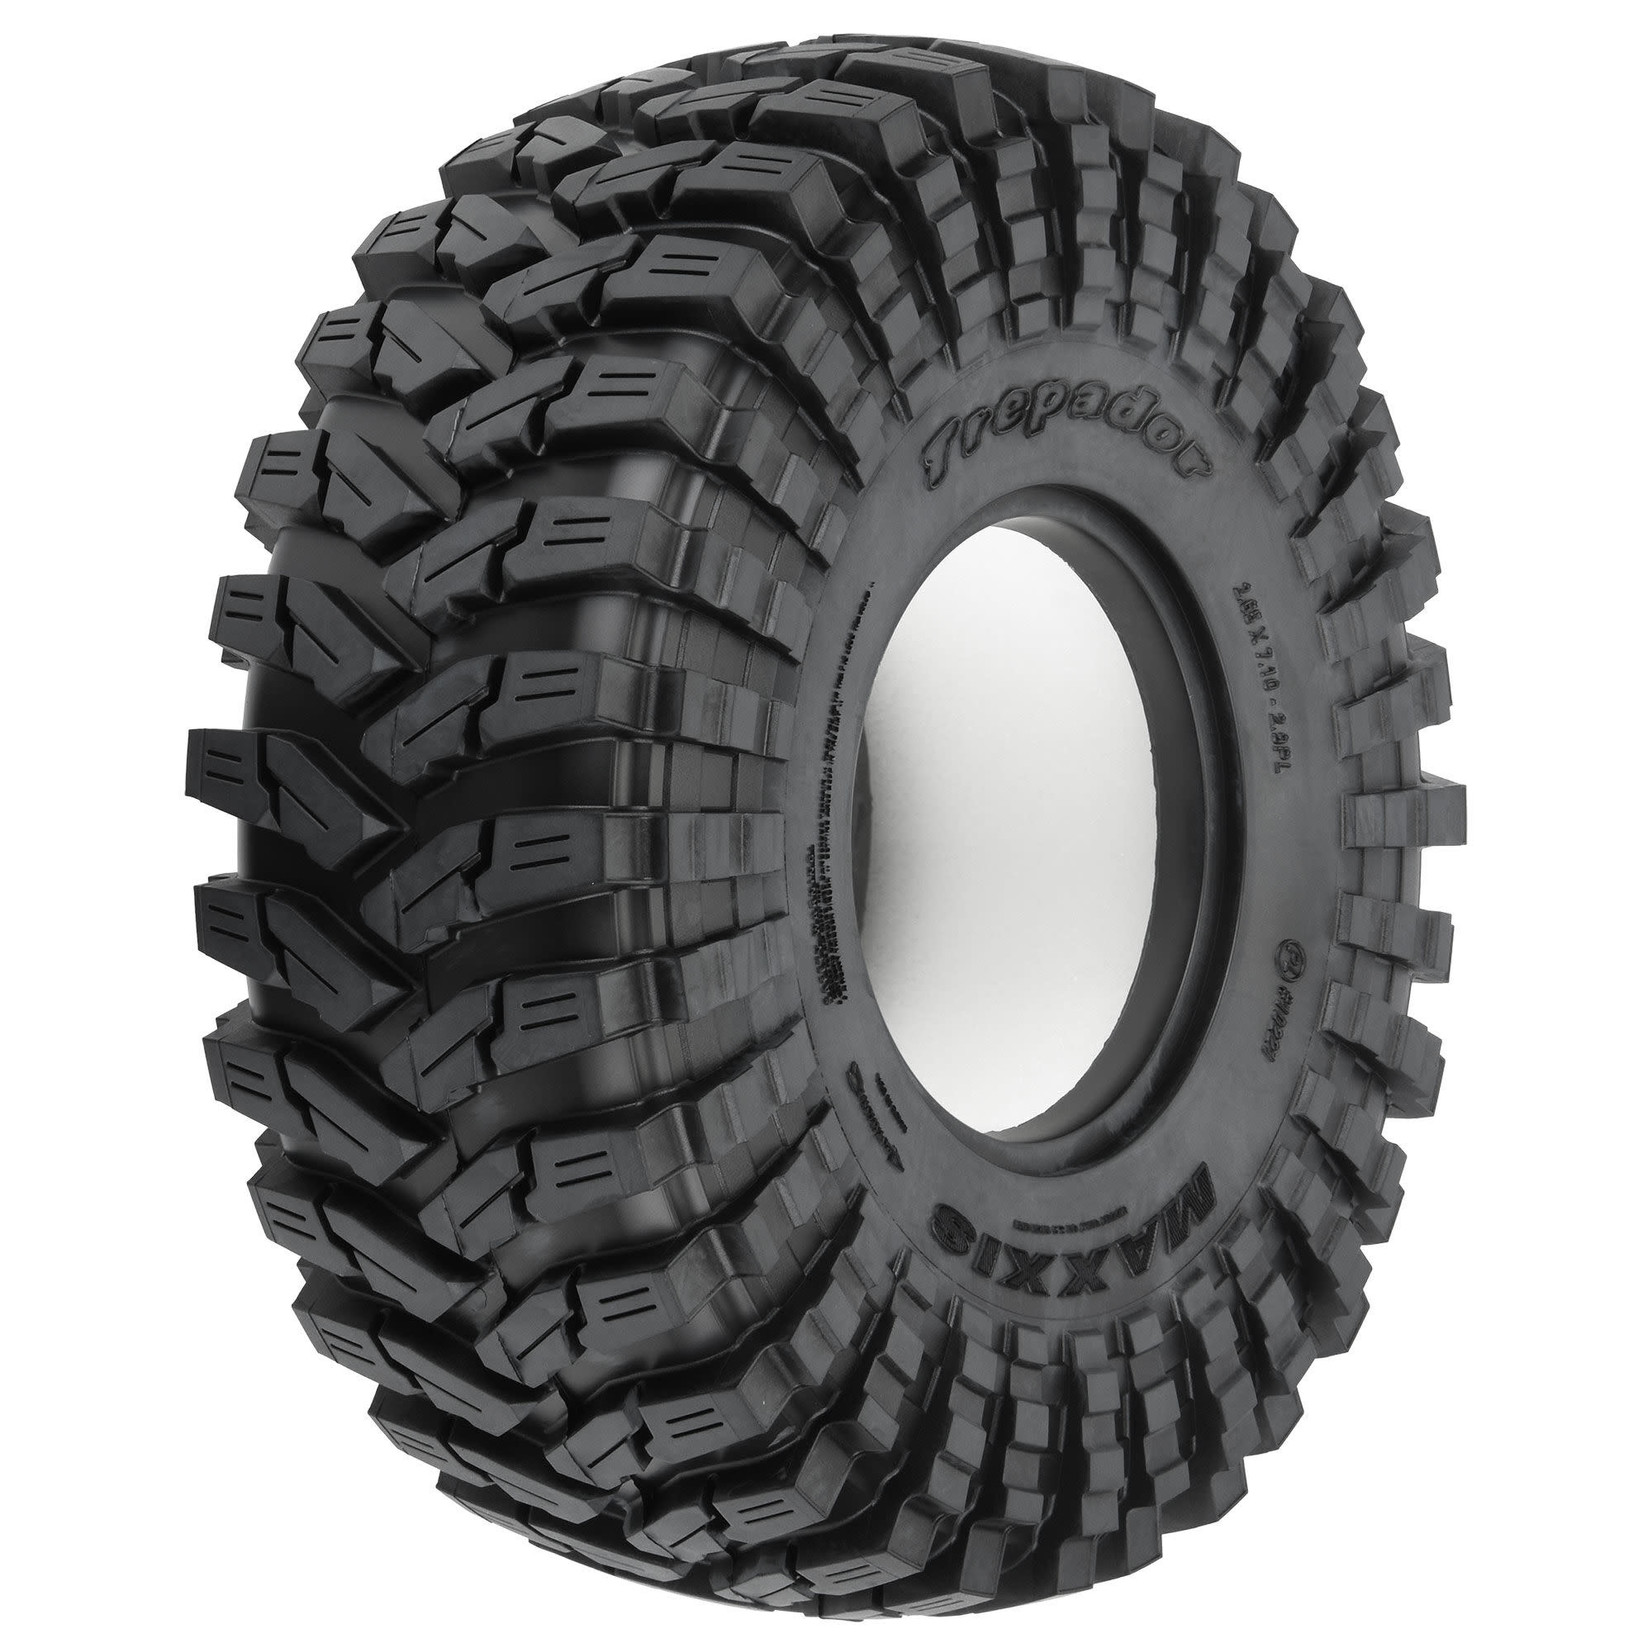 Pro-Line Pro-Line SCX6 1/6 Maxxis Trepador G8 F/R 2.9" Rock Crawler Tires (2) #10221-14